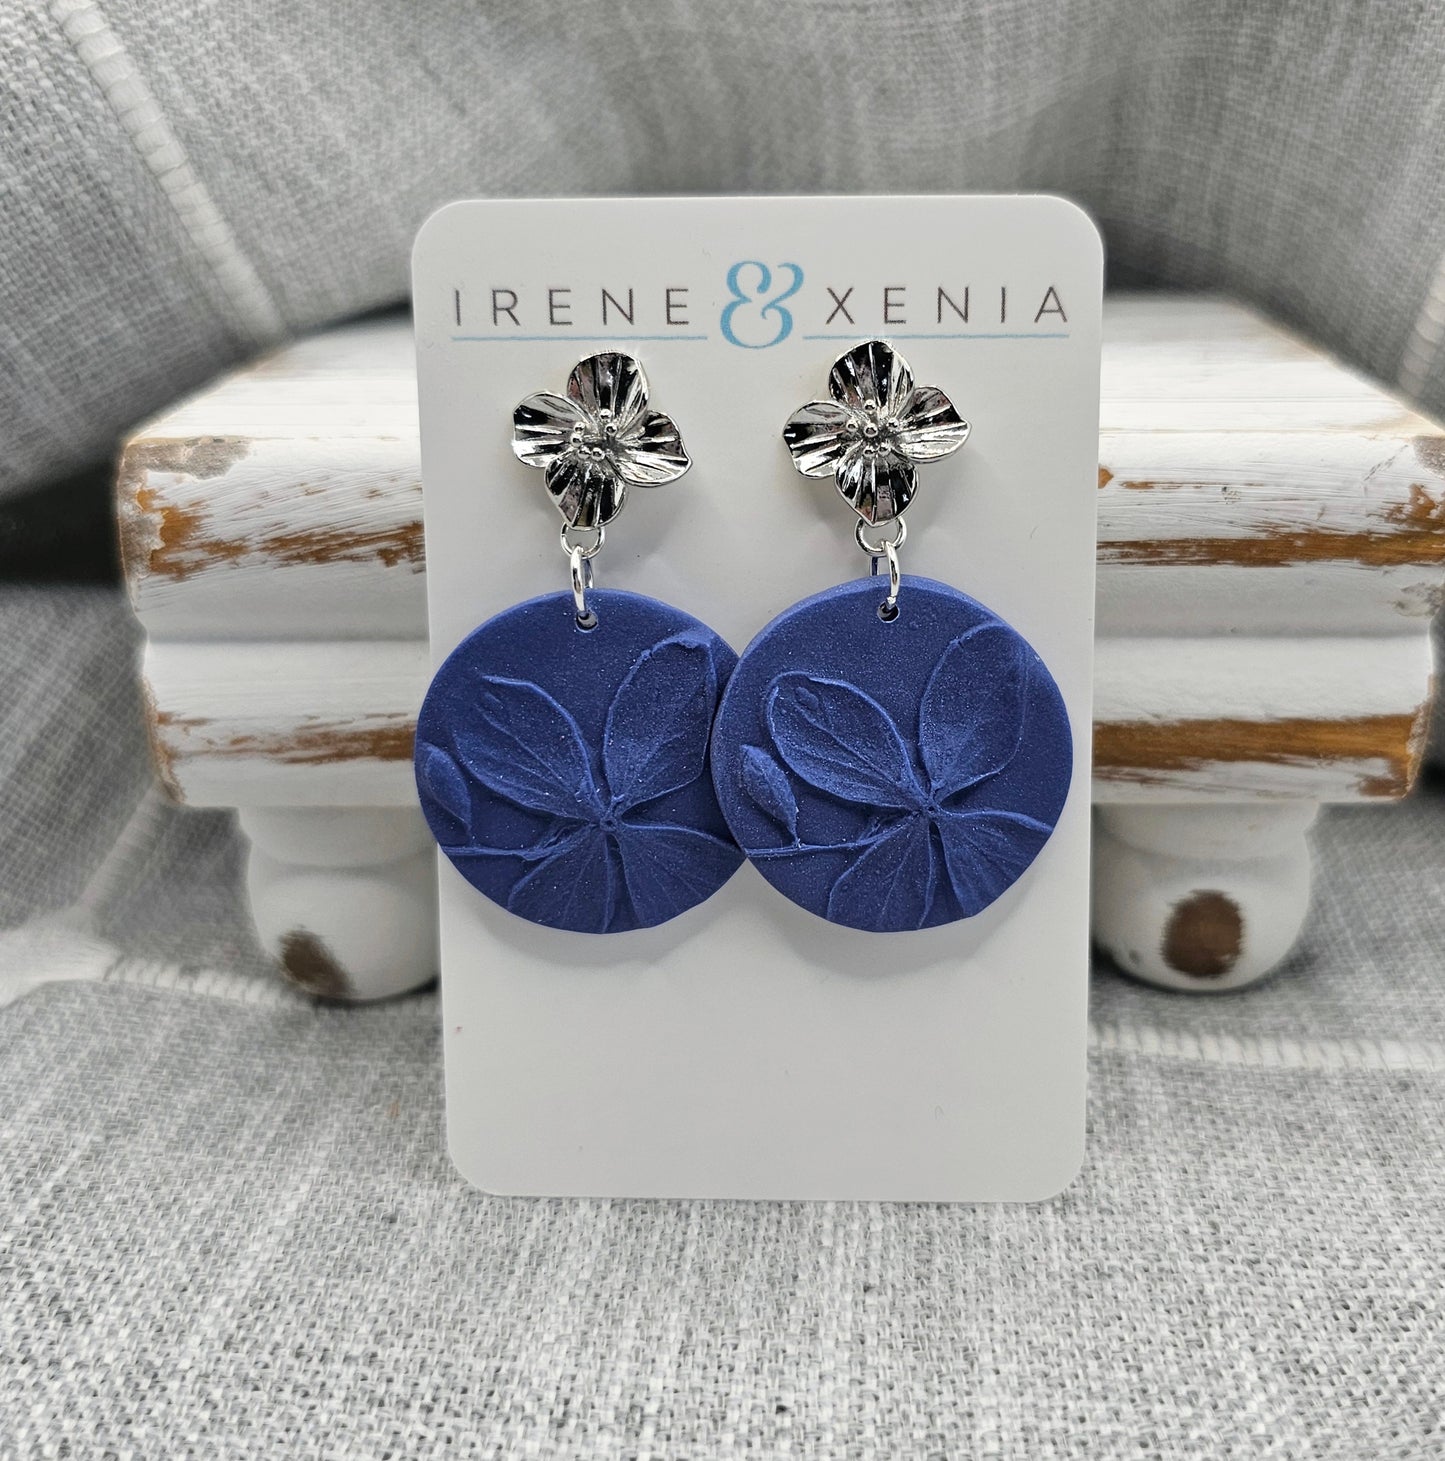 Hydrangea Earrings